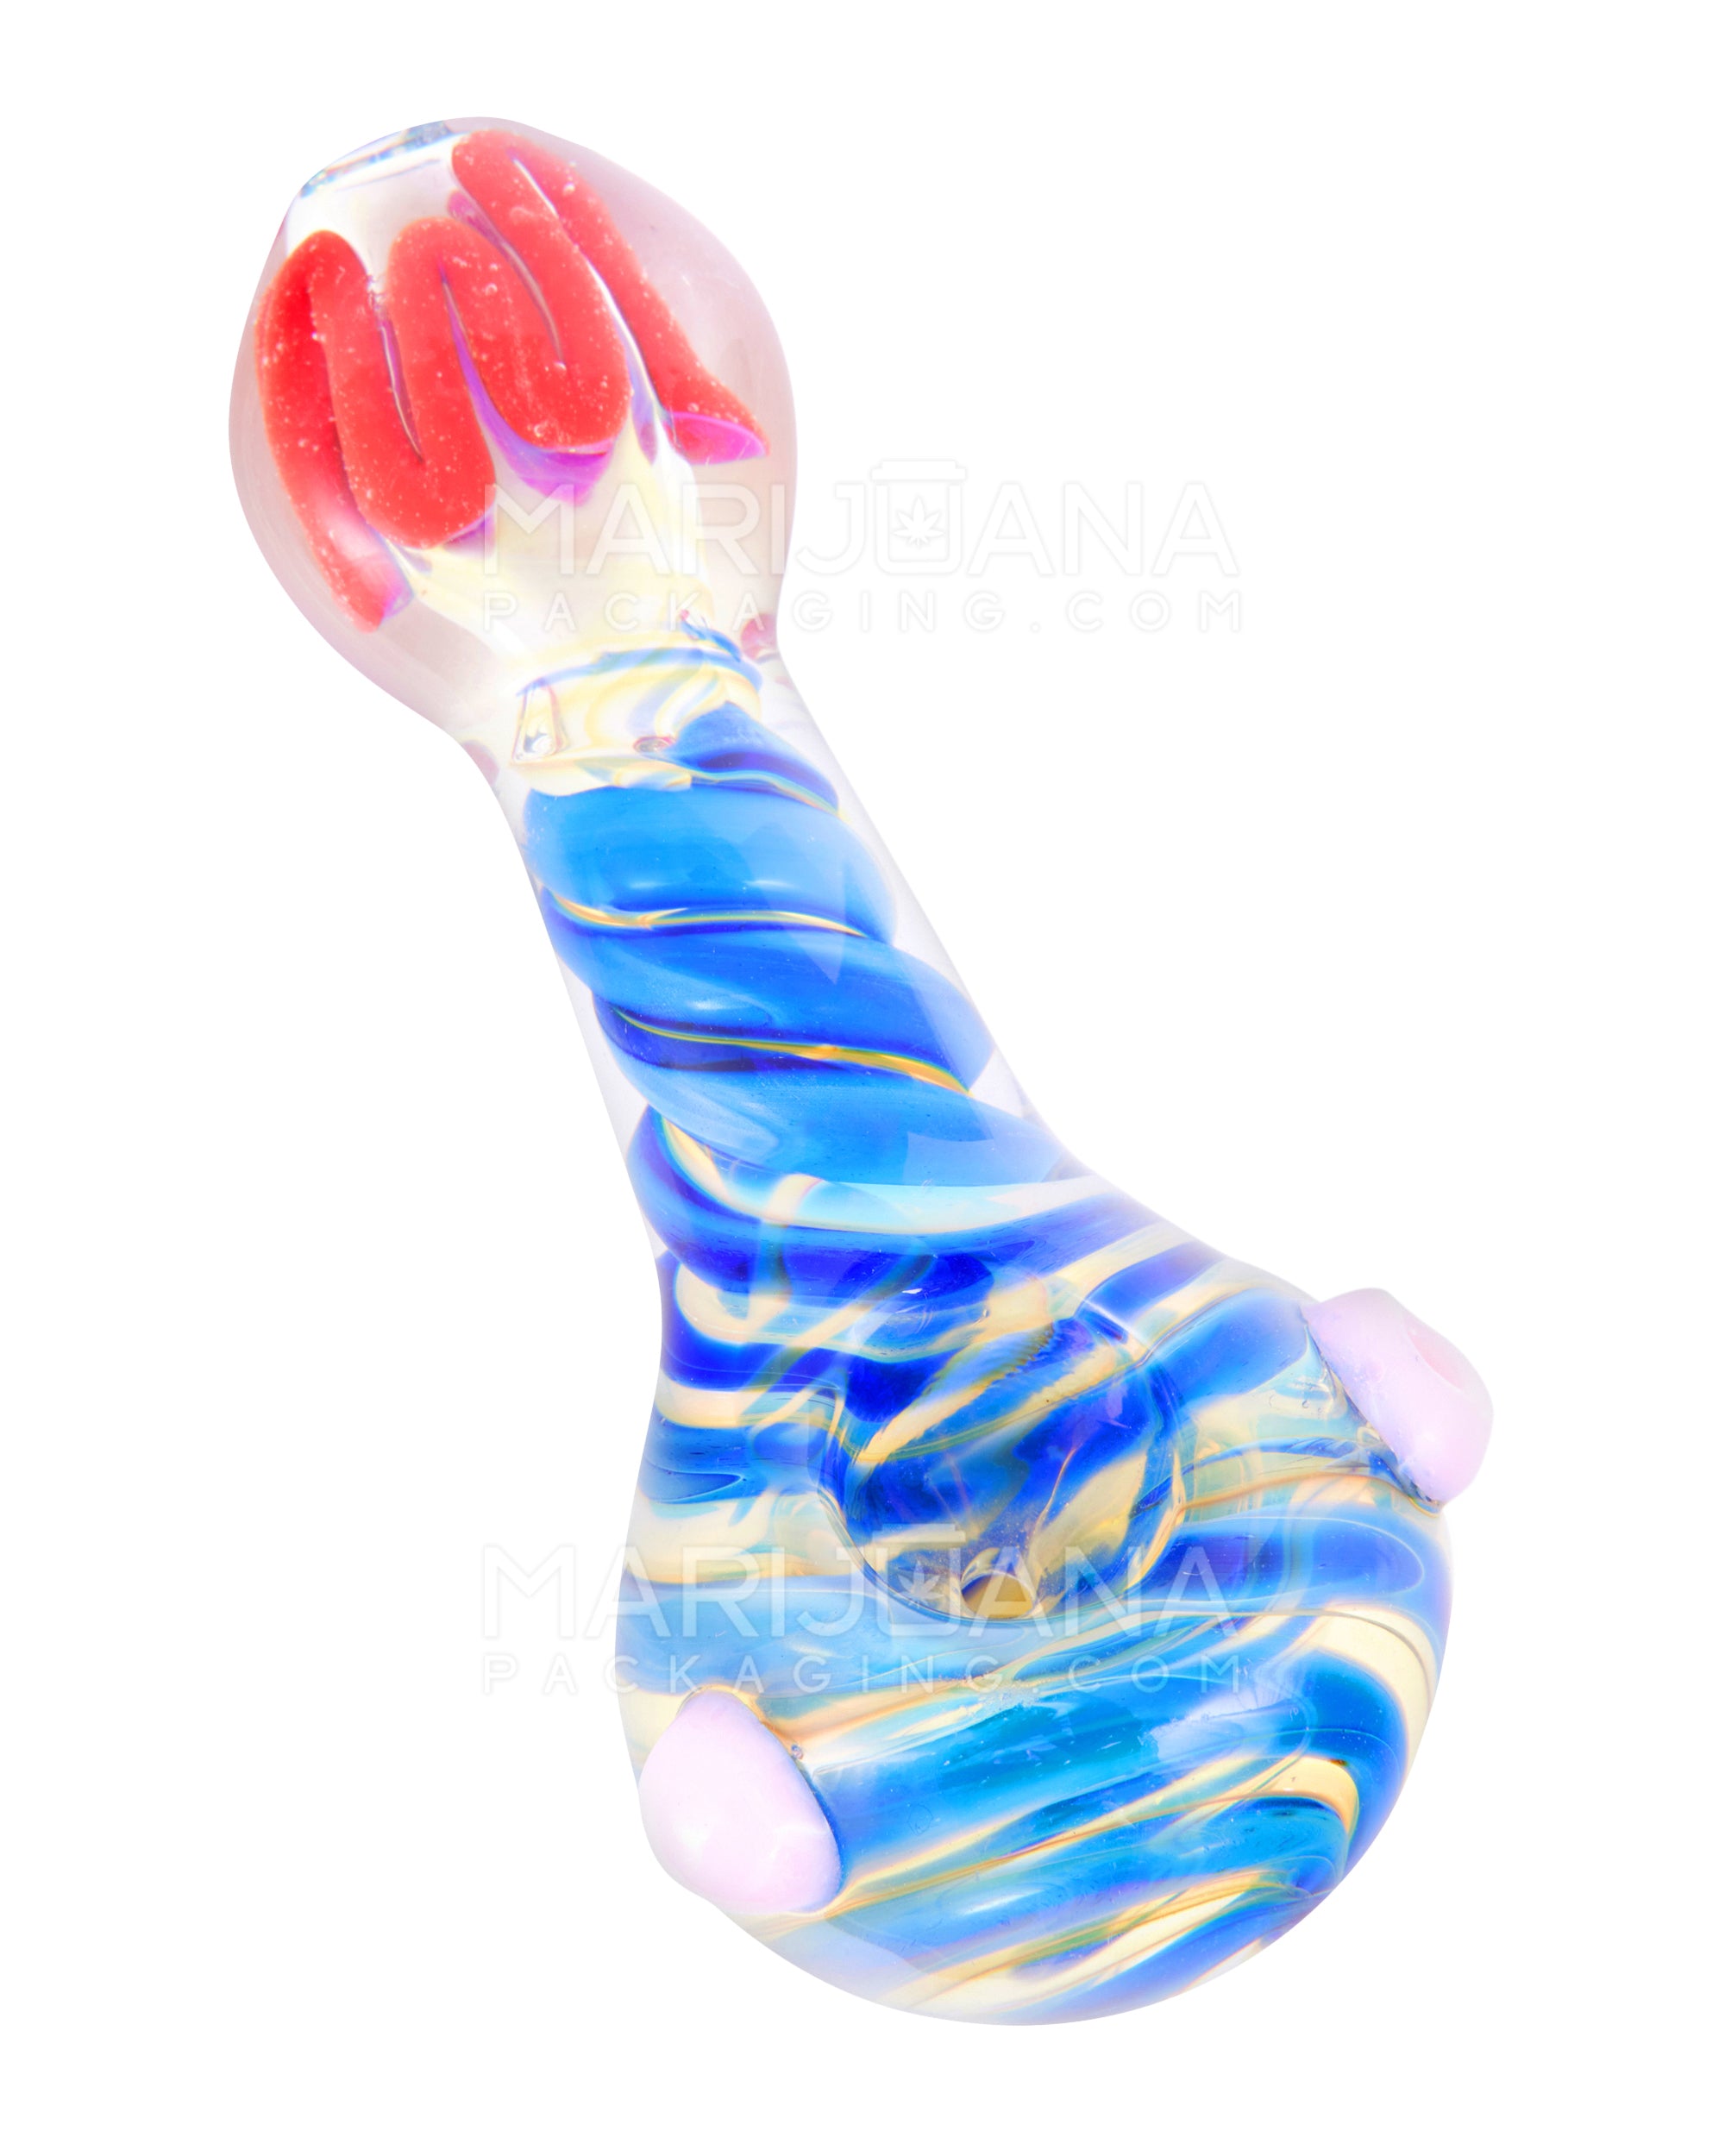 Flat Mouthpiece Spiral & Fumed Spoon Hand Pipe w/ Swirls & Knocker | 4.5in Long - Glass - Assorted - 1